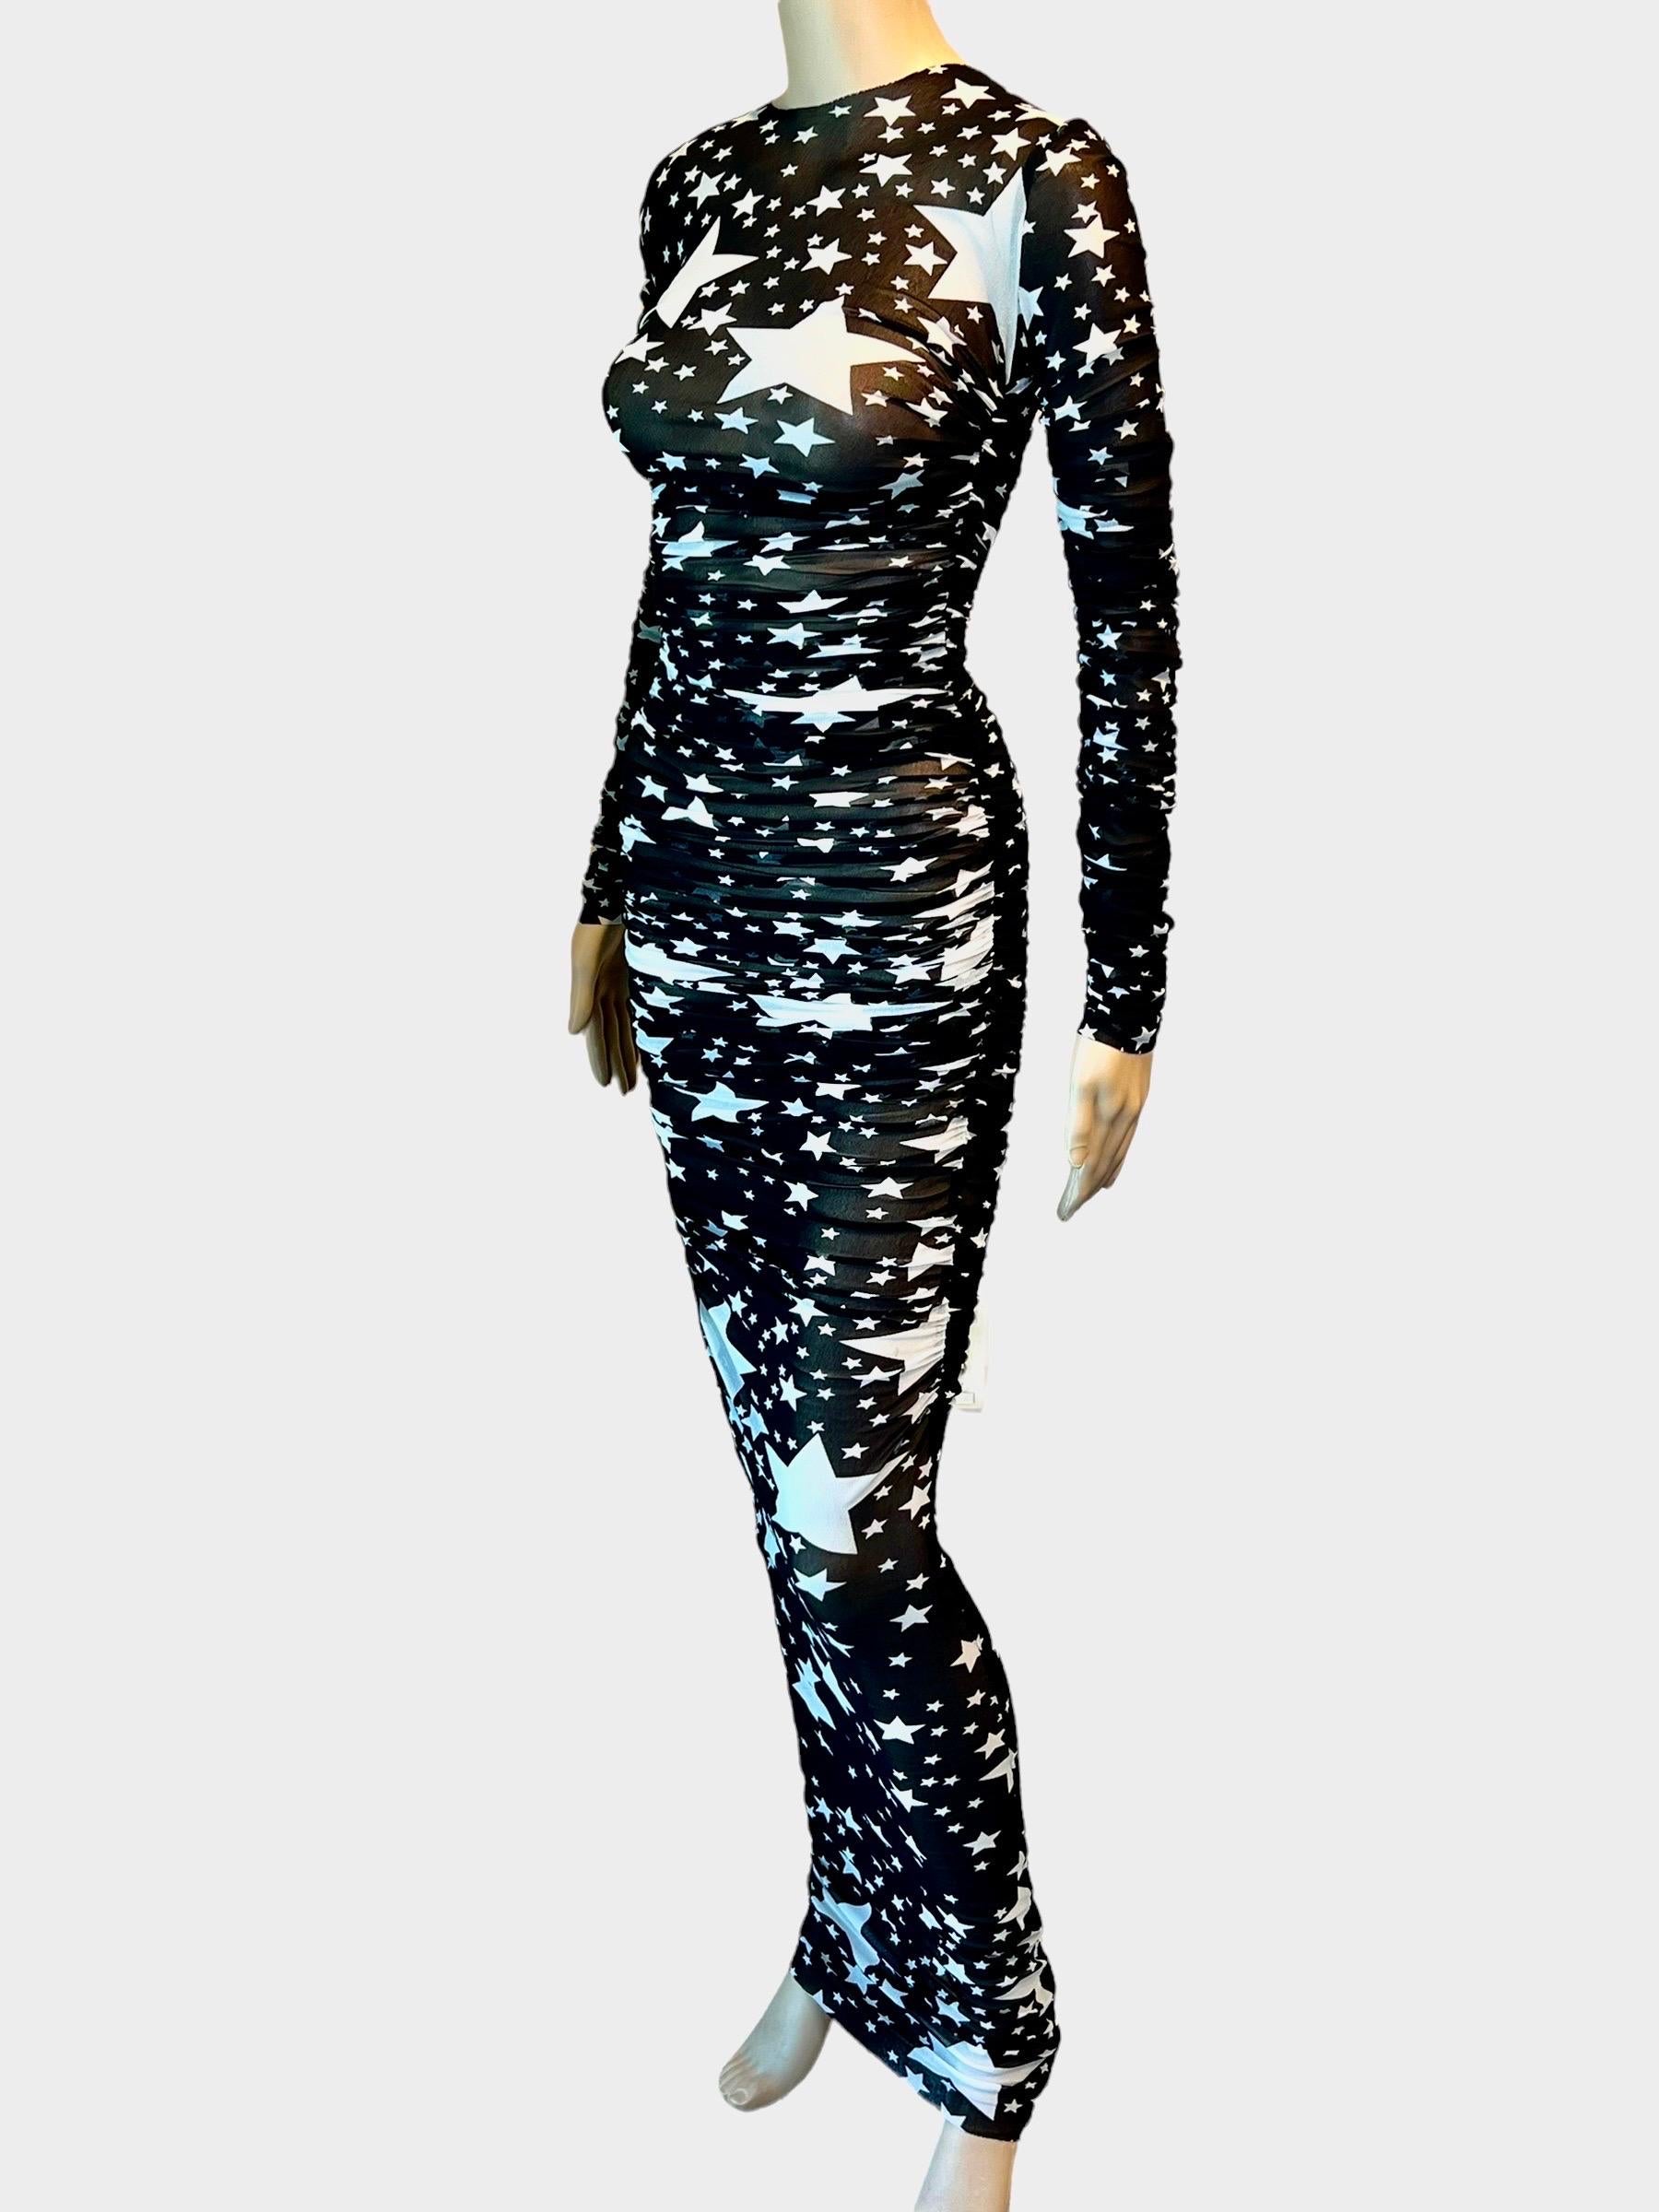 Dolce & Gabbana F/W 2011 Laufsteg Sterndruck durchsichtiges Mesh gerafftes Maxi Abendkleid IT 36

Look 71 aus der Fall Collection'S 2011.

Ausgezeichneter Zustand.
